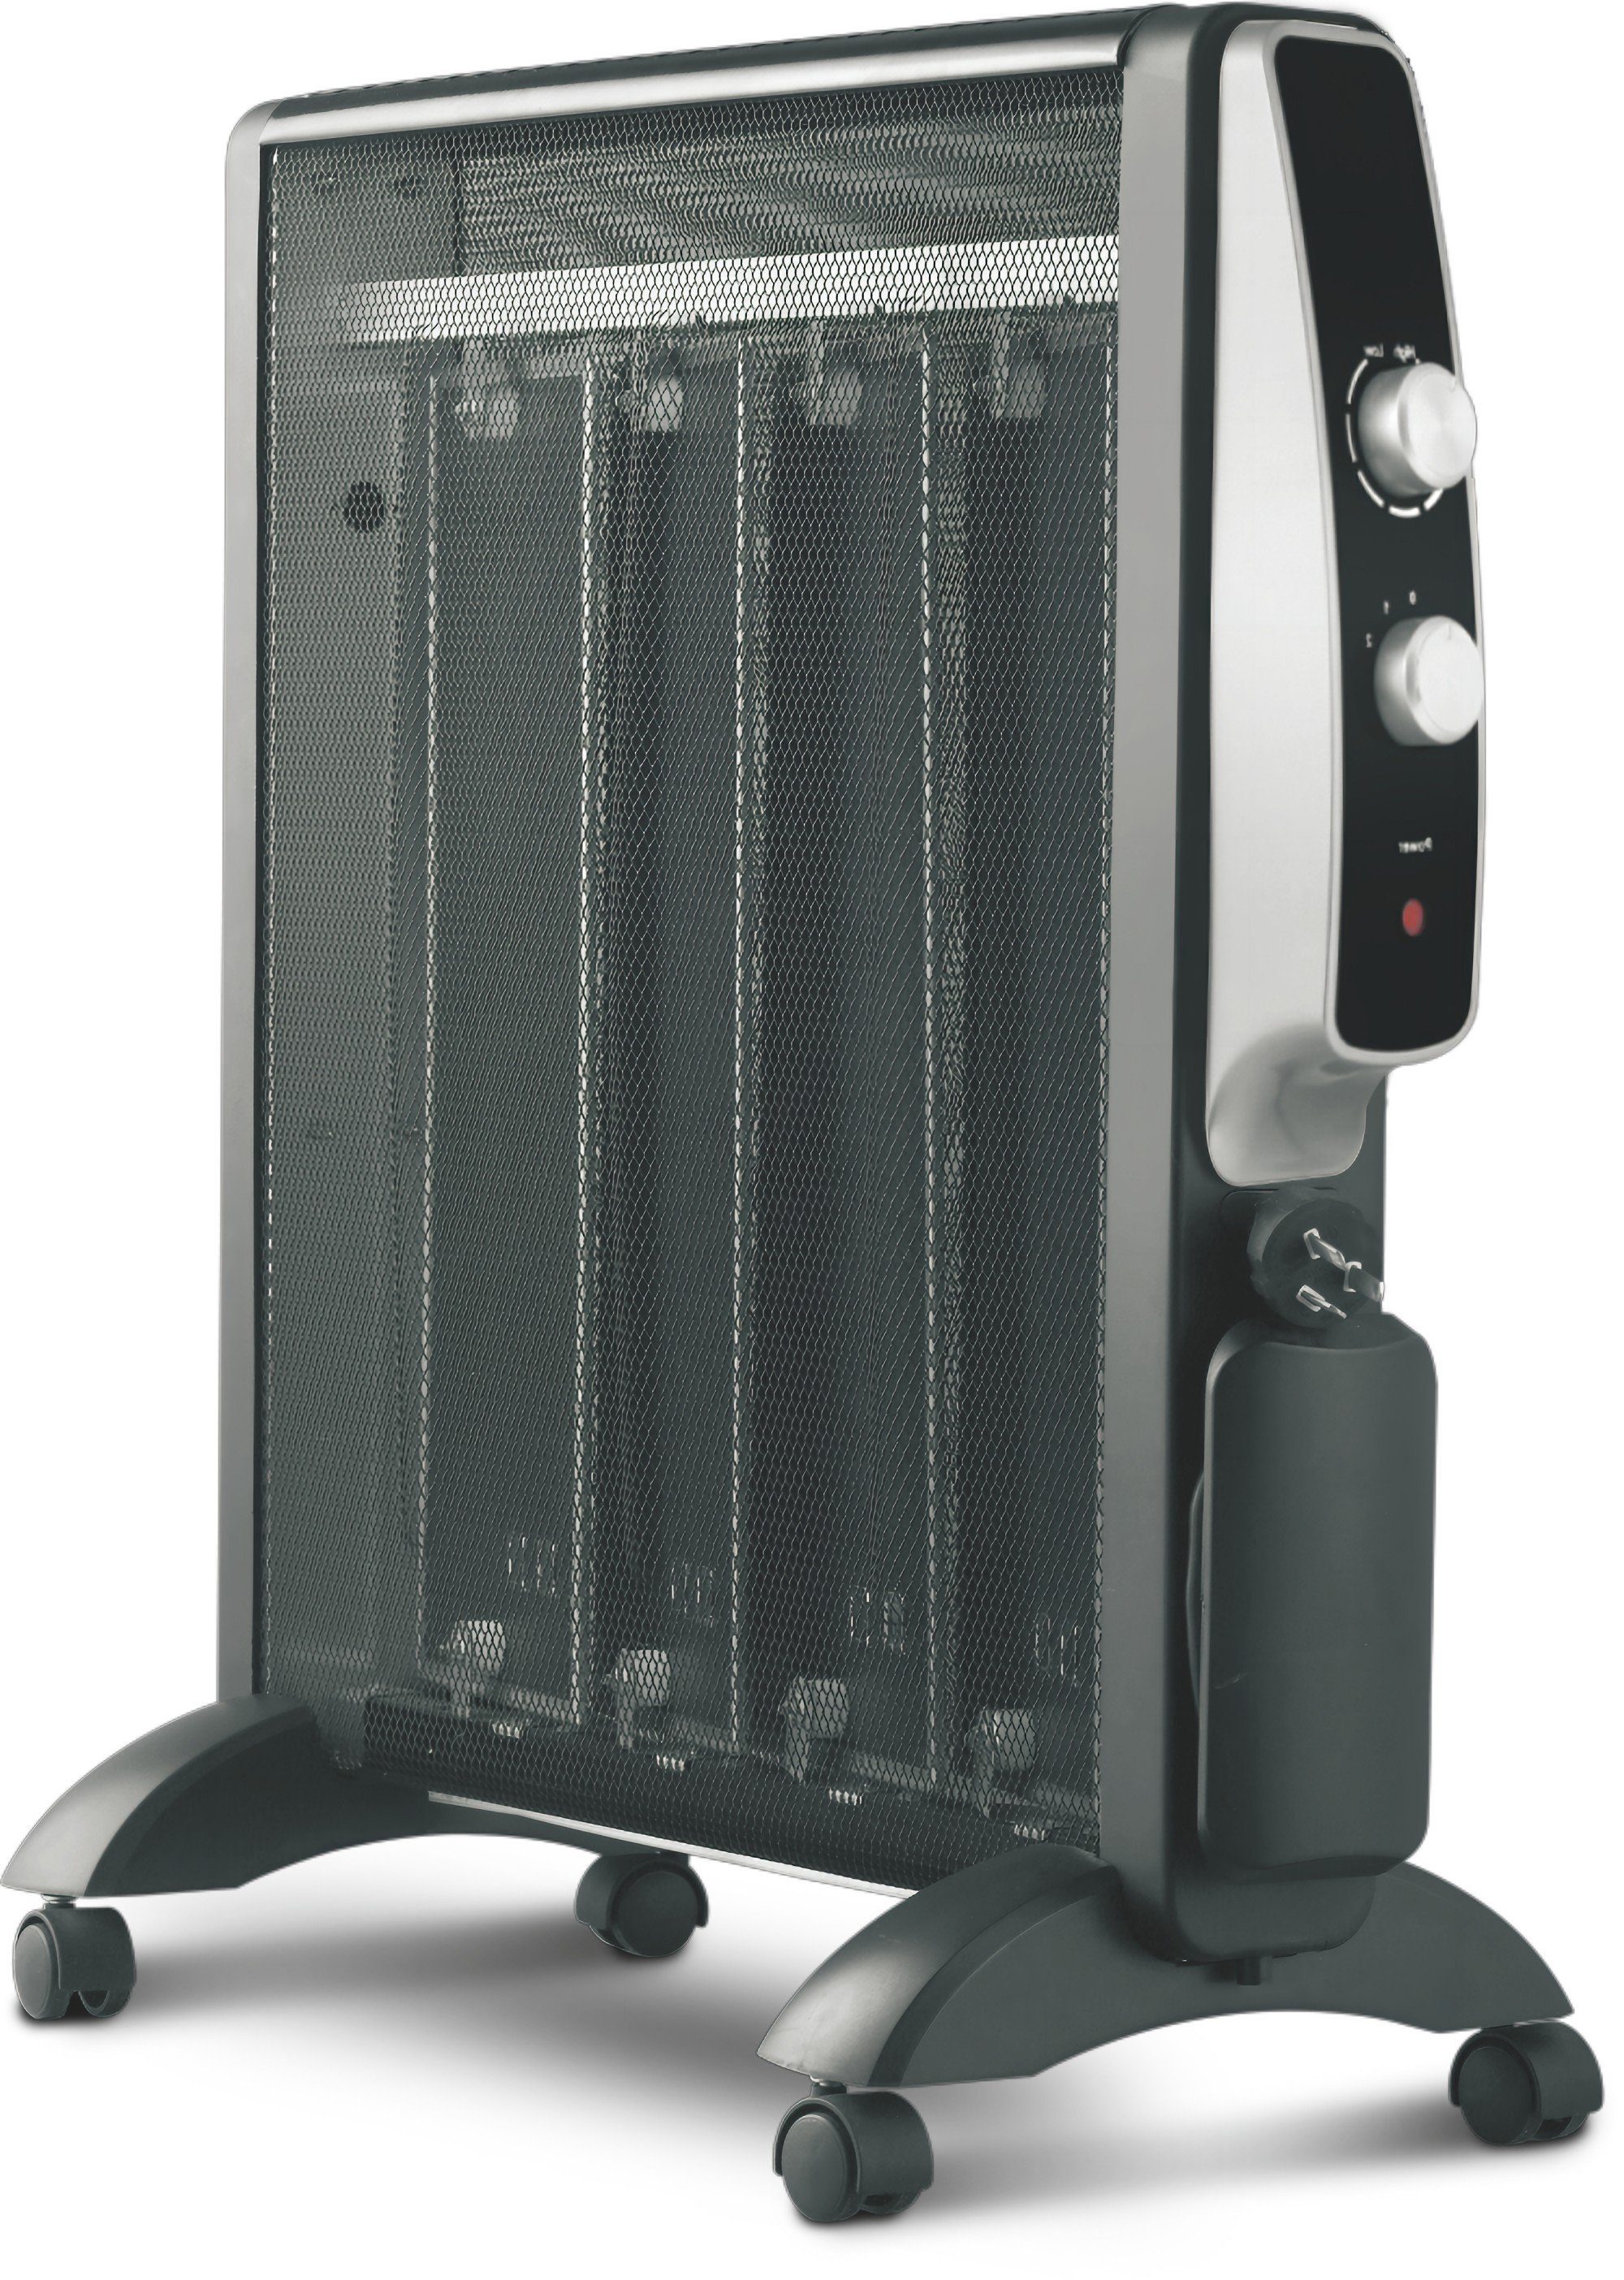 Fine Life Pro Heizgerät 2500W einstellbarer Thermostat, 2500 W, 3 Heizstufen,Sicher und energieeffizient